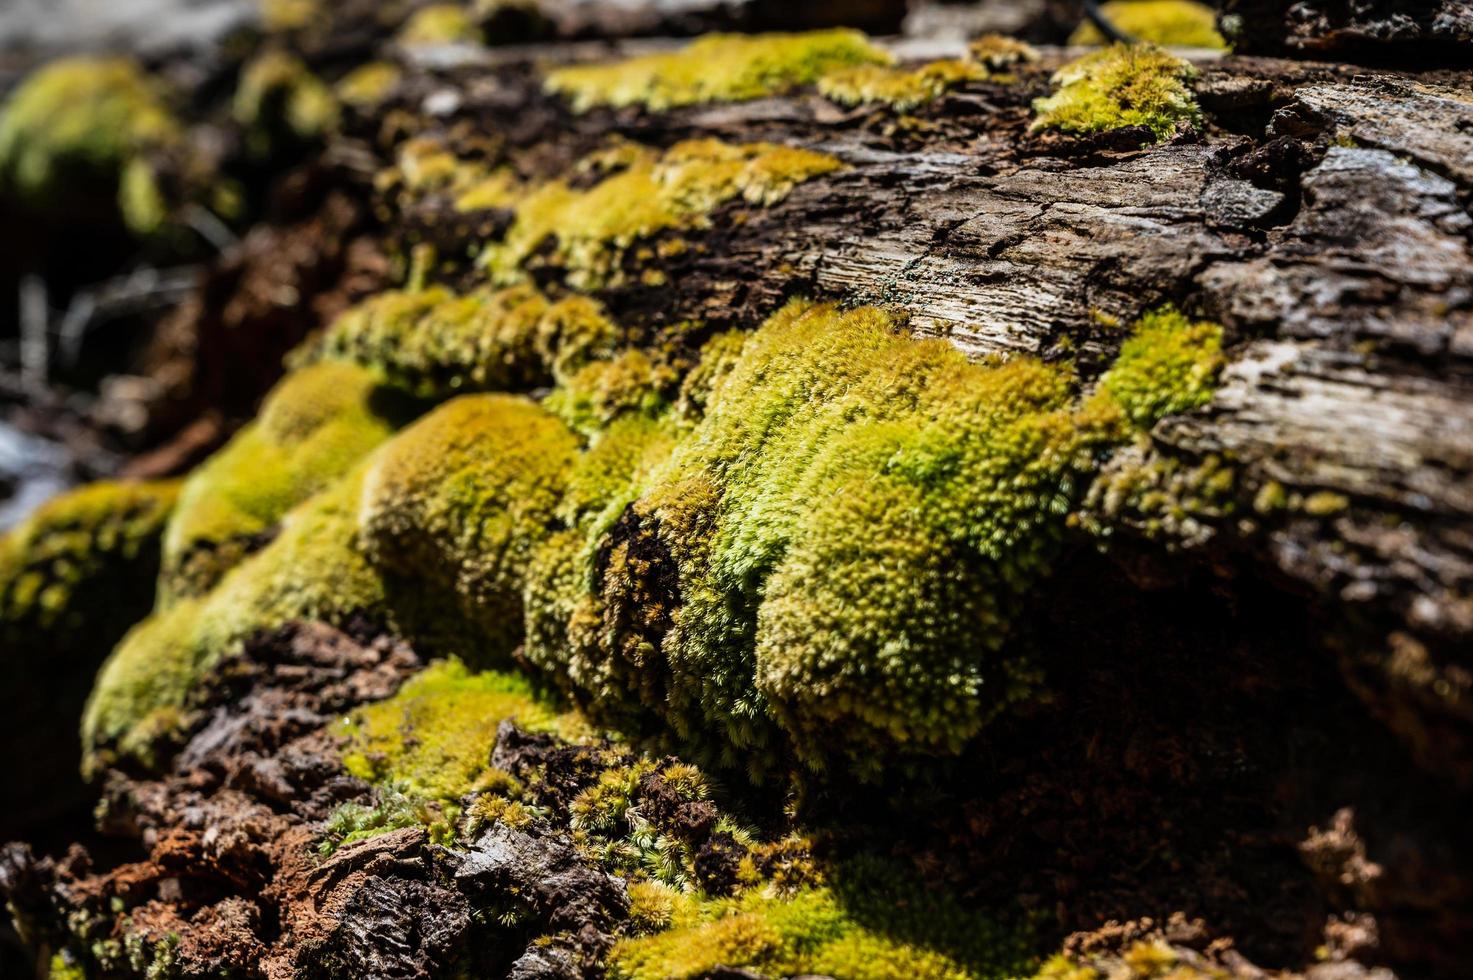 la mousse verte pousse à la racine de l'arbre. texture de mousse dans la nature pour le papier peint. mise au point douce. photo